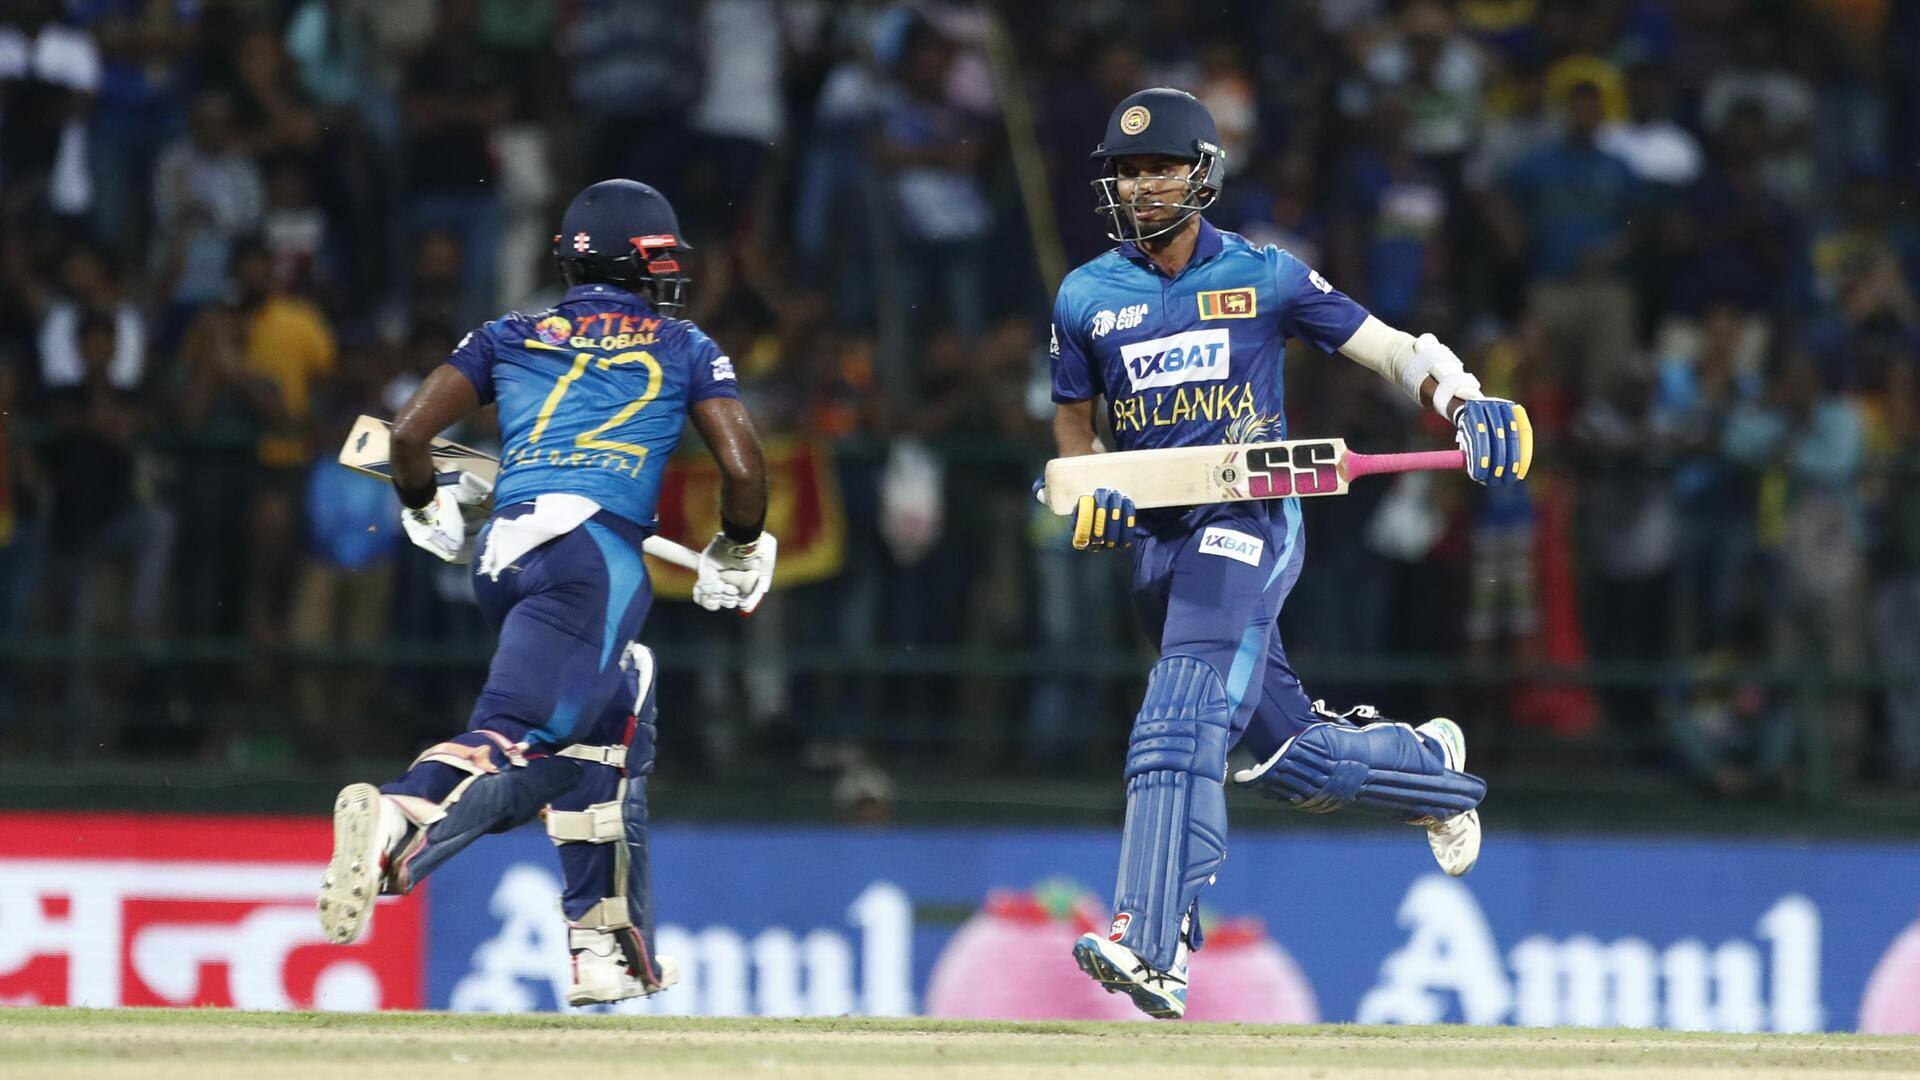 श्रीलंका क्रिकेट टीम जनवरी में जिम्बाब्वे के खिलाफ घर में खेलेगी वनडे और टी-20 सीरीज 